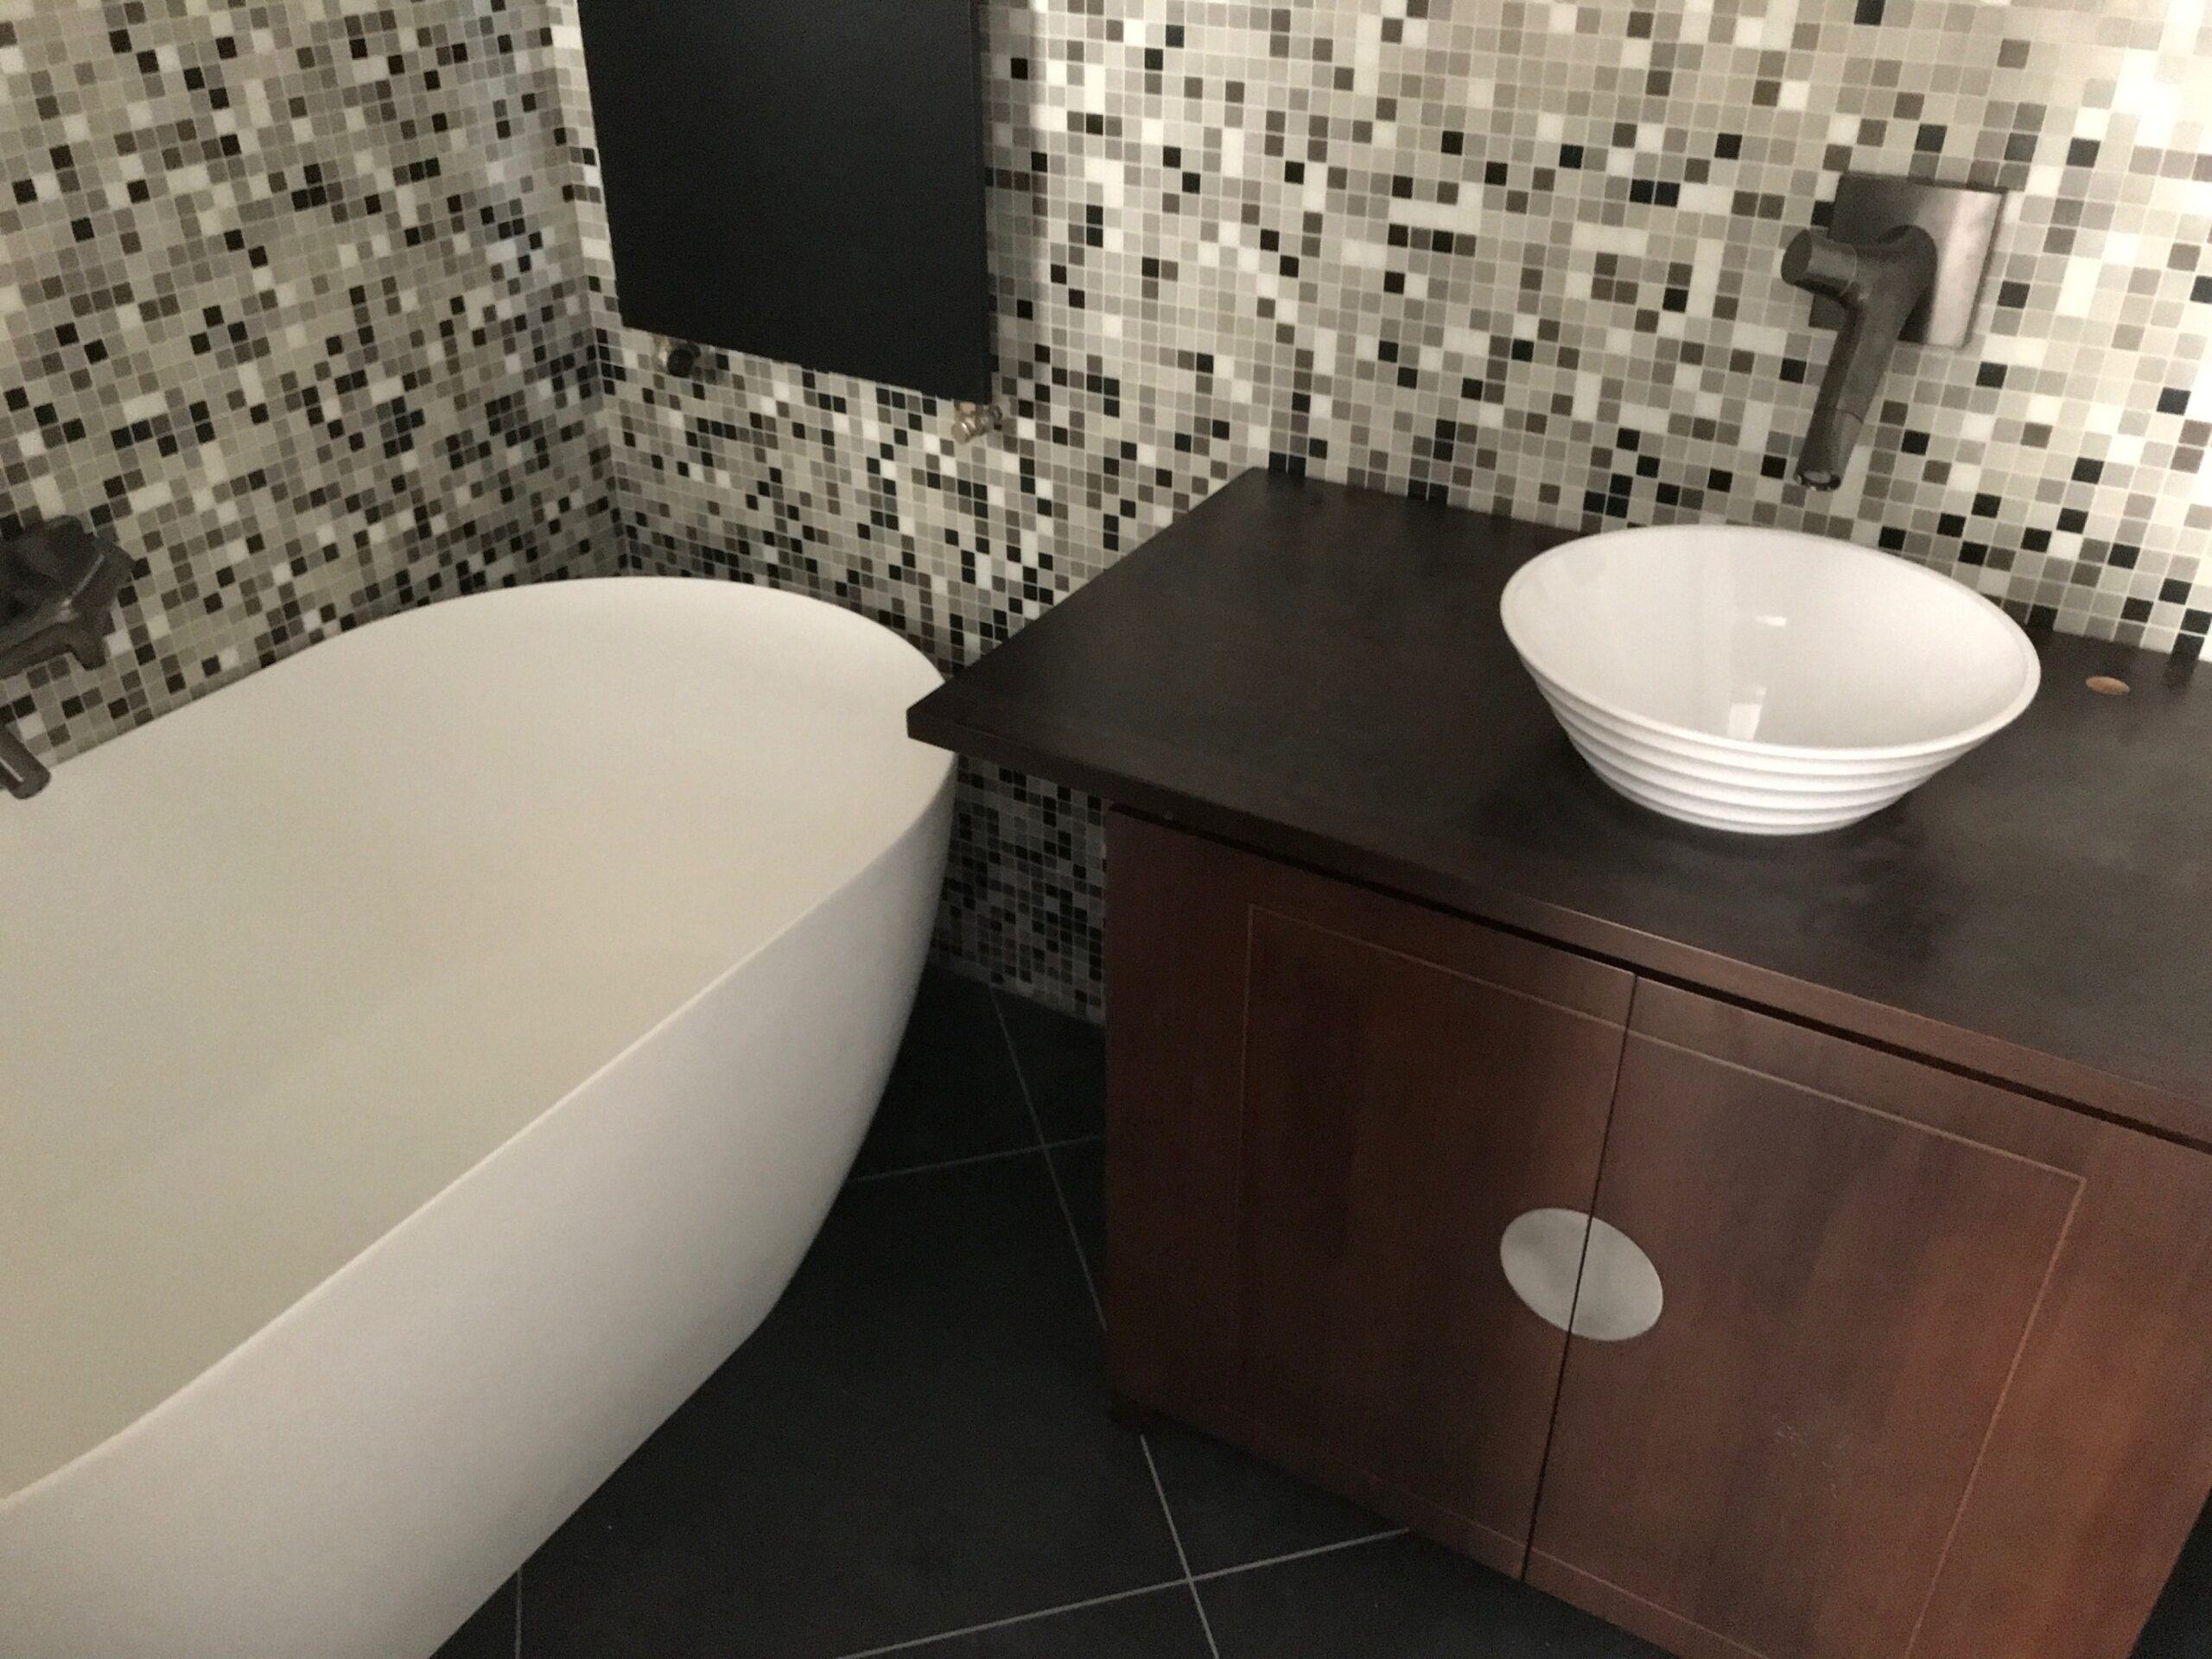 Salle de bains, sanitaire, plomberie Bourg-en-Bresse